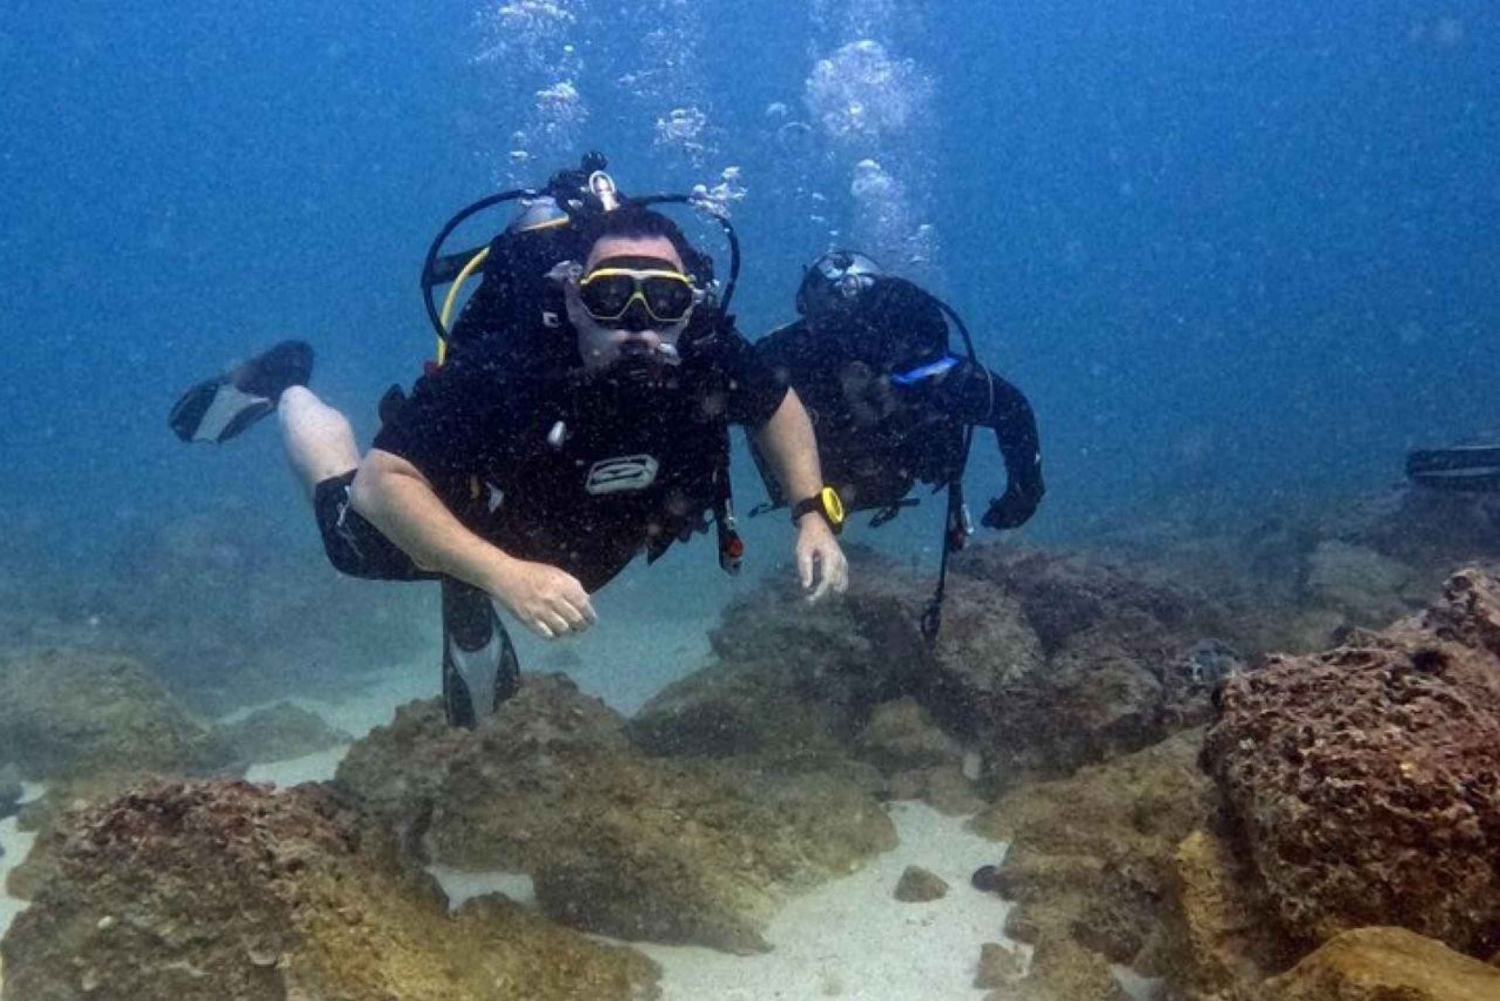 Dubai: Prøv en dykkeroplevelse